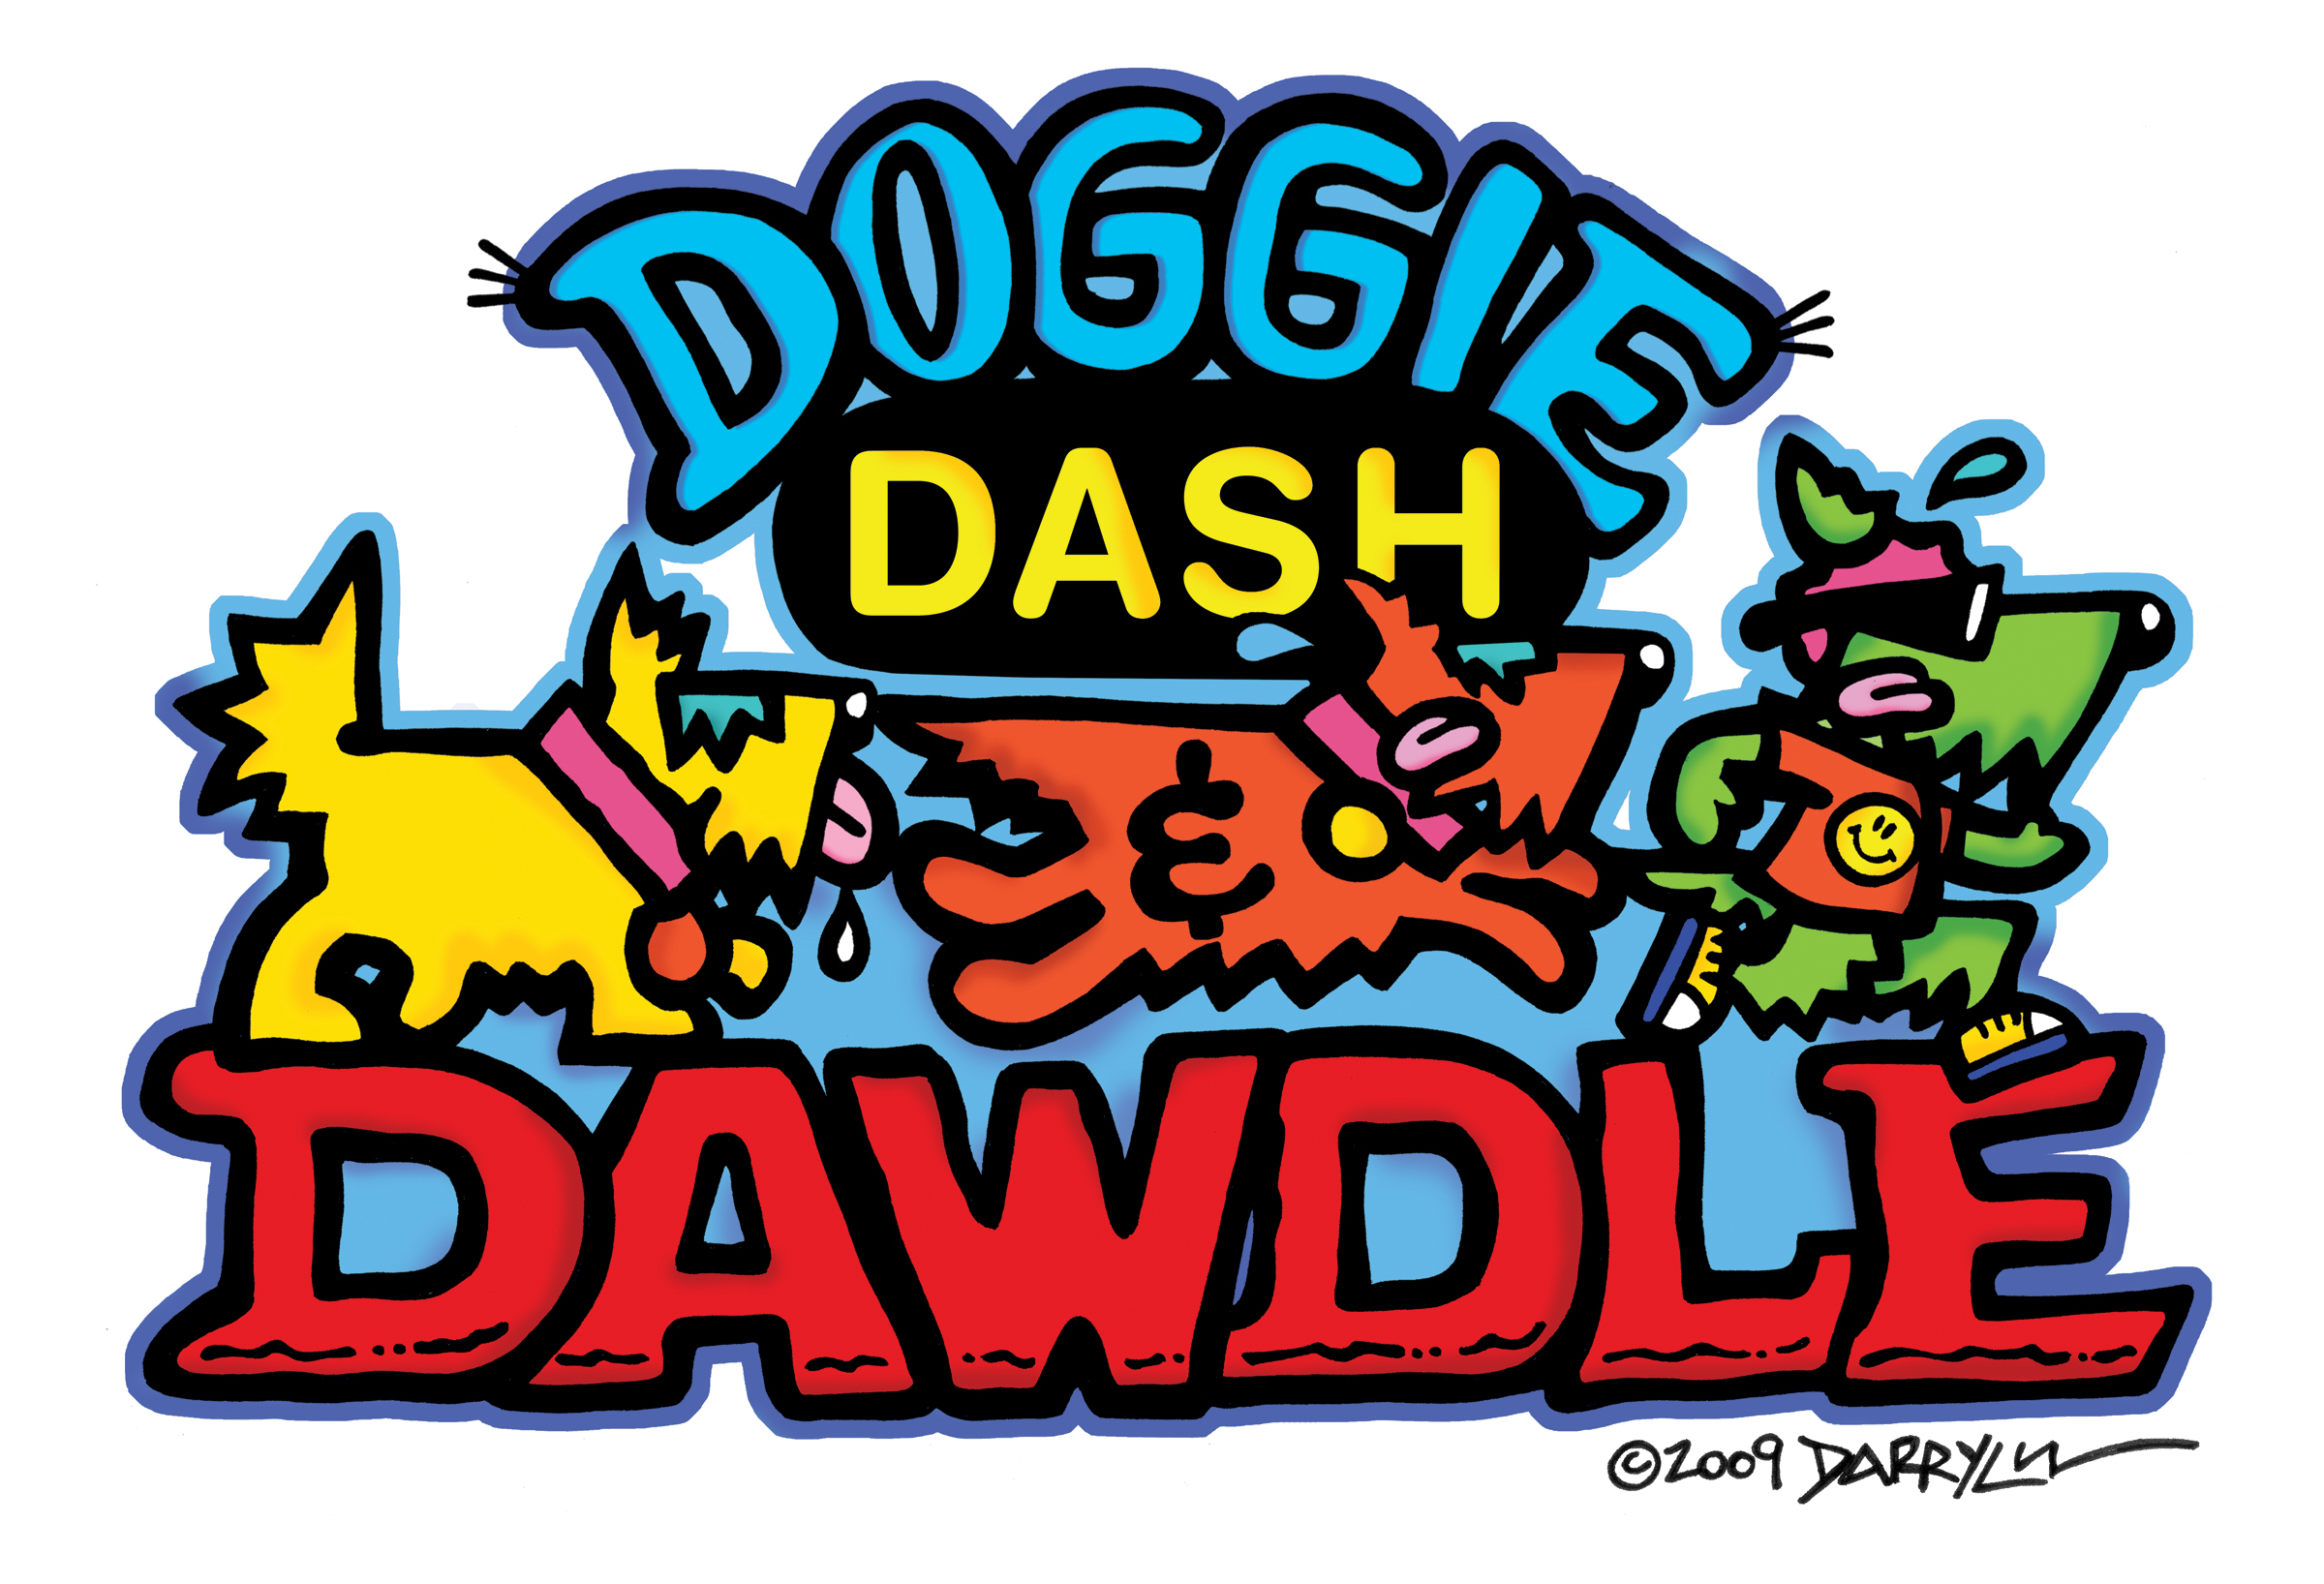 Doggie Dash and Dawdle